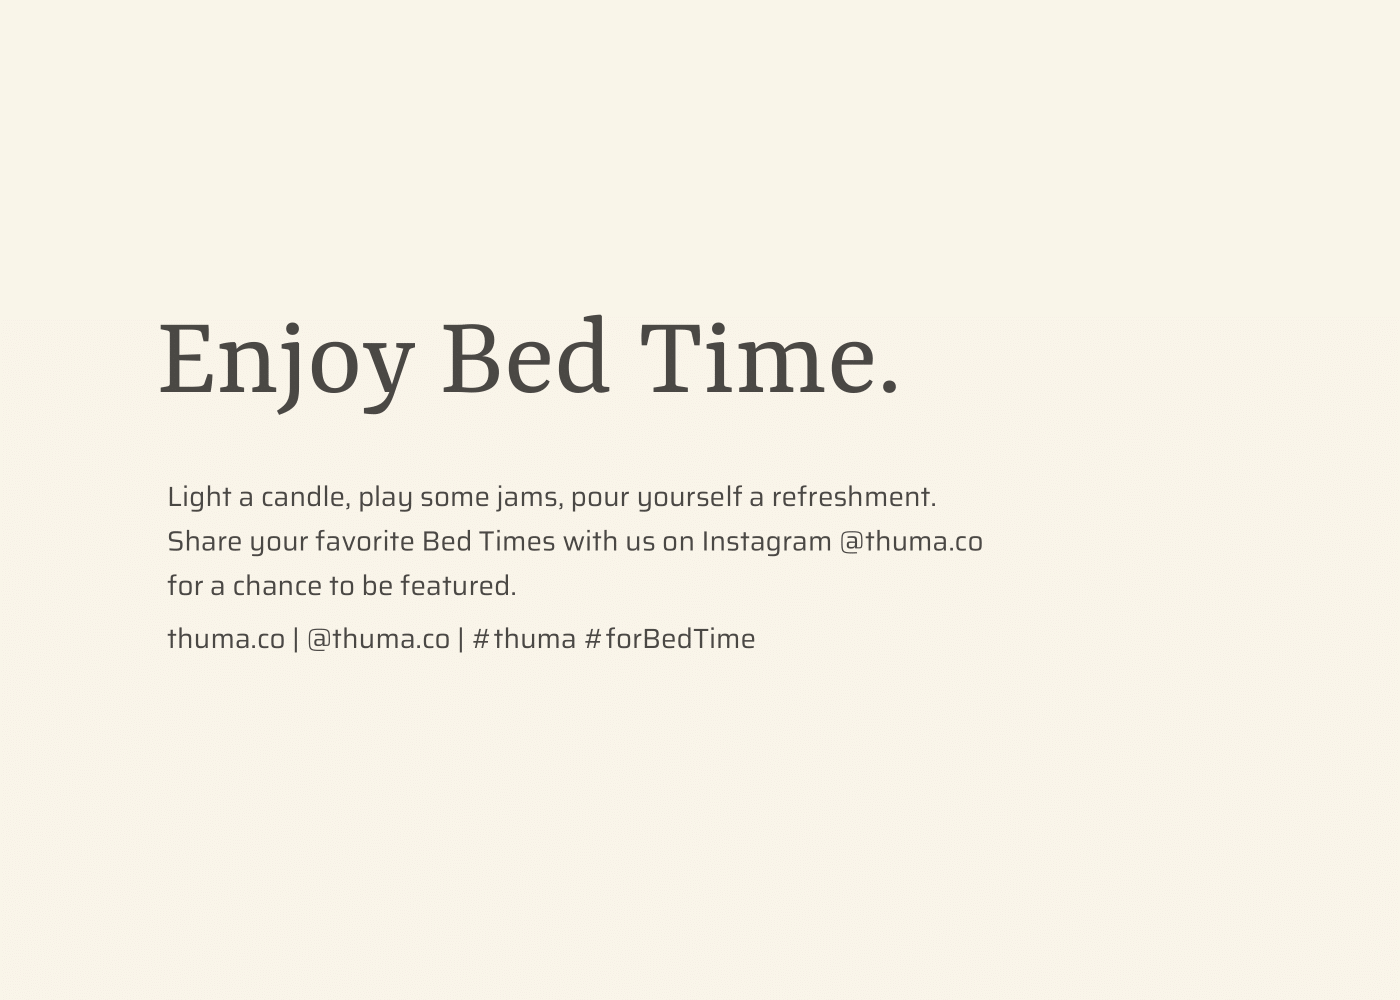 Enjoy Bed Time - The Bed + PB Desktop Image